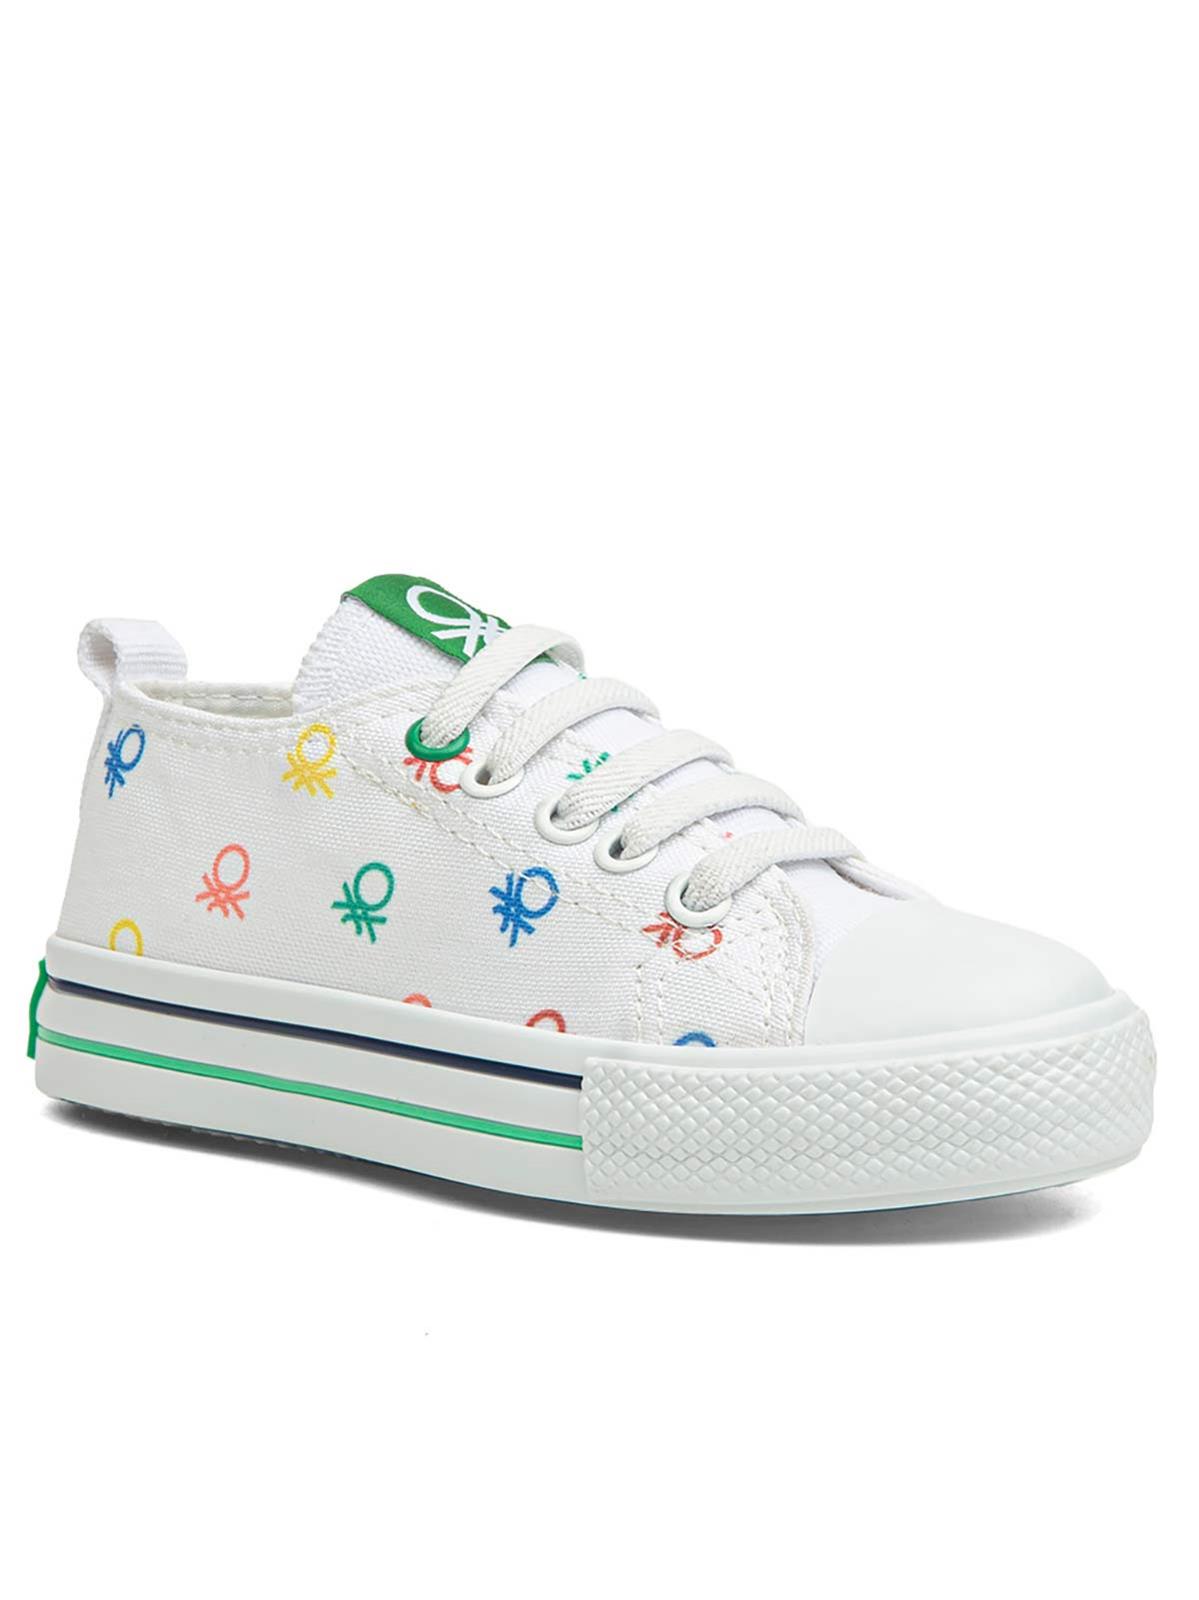 Benetton Kız Çocuk Spor Ayakkabı 21-25 Numara Beyaz